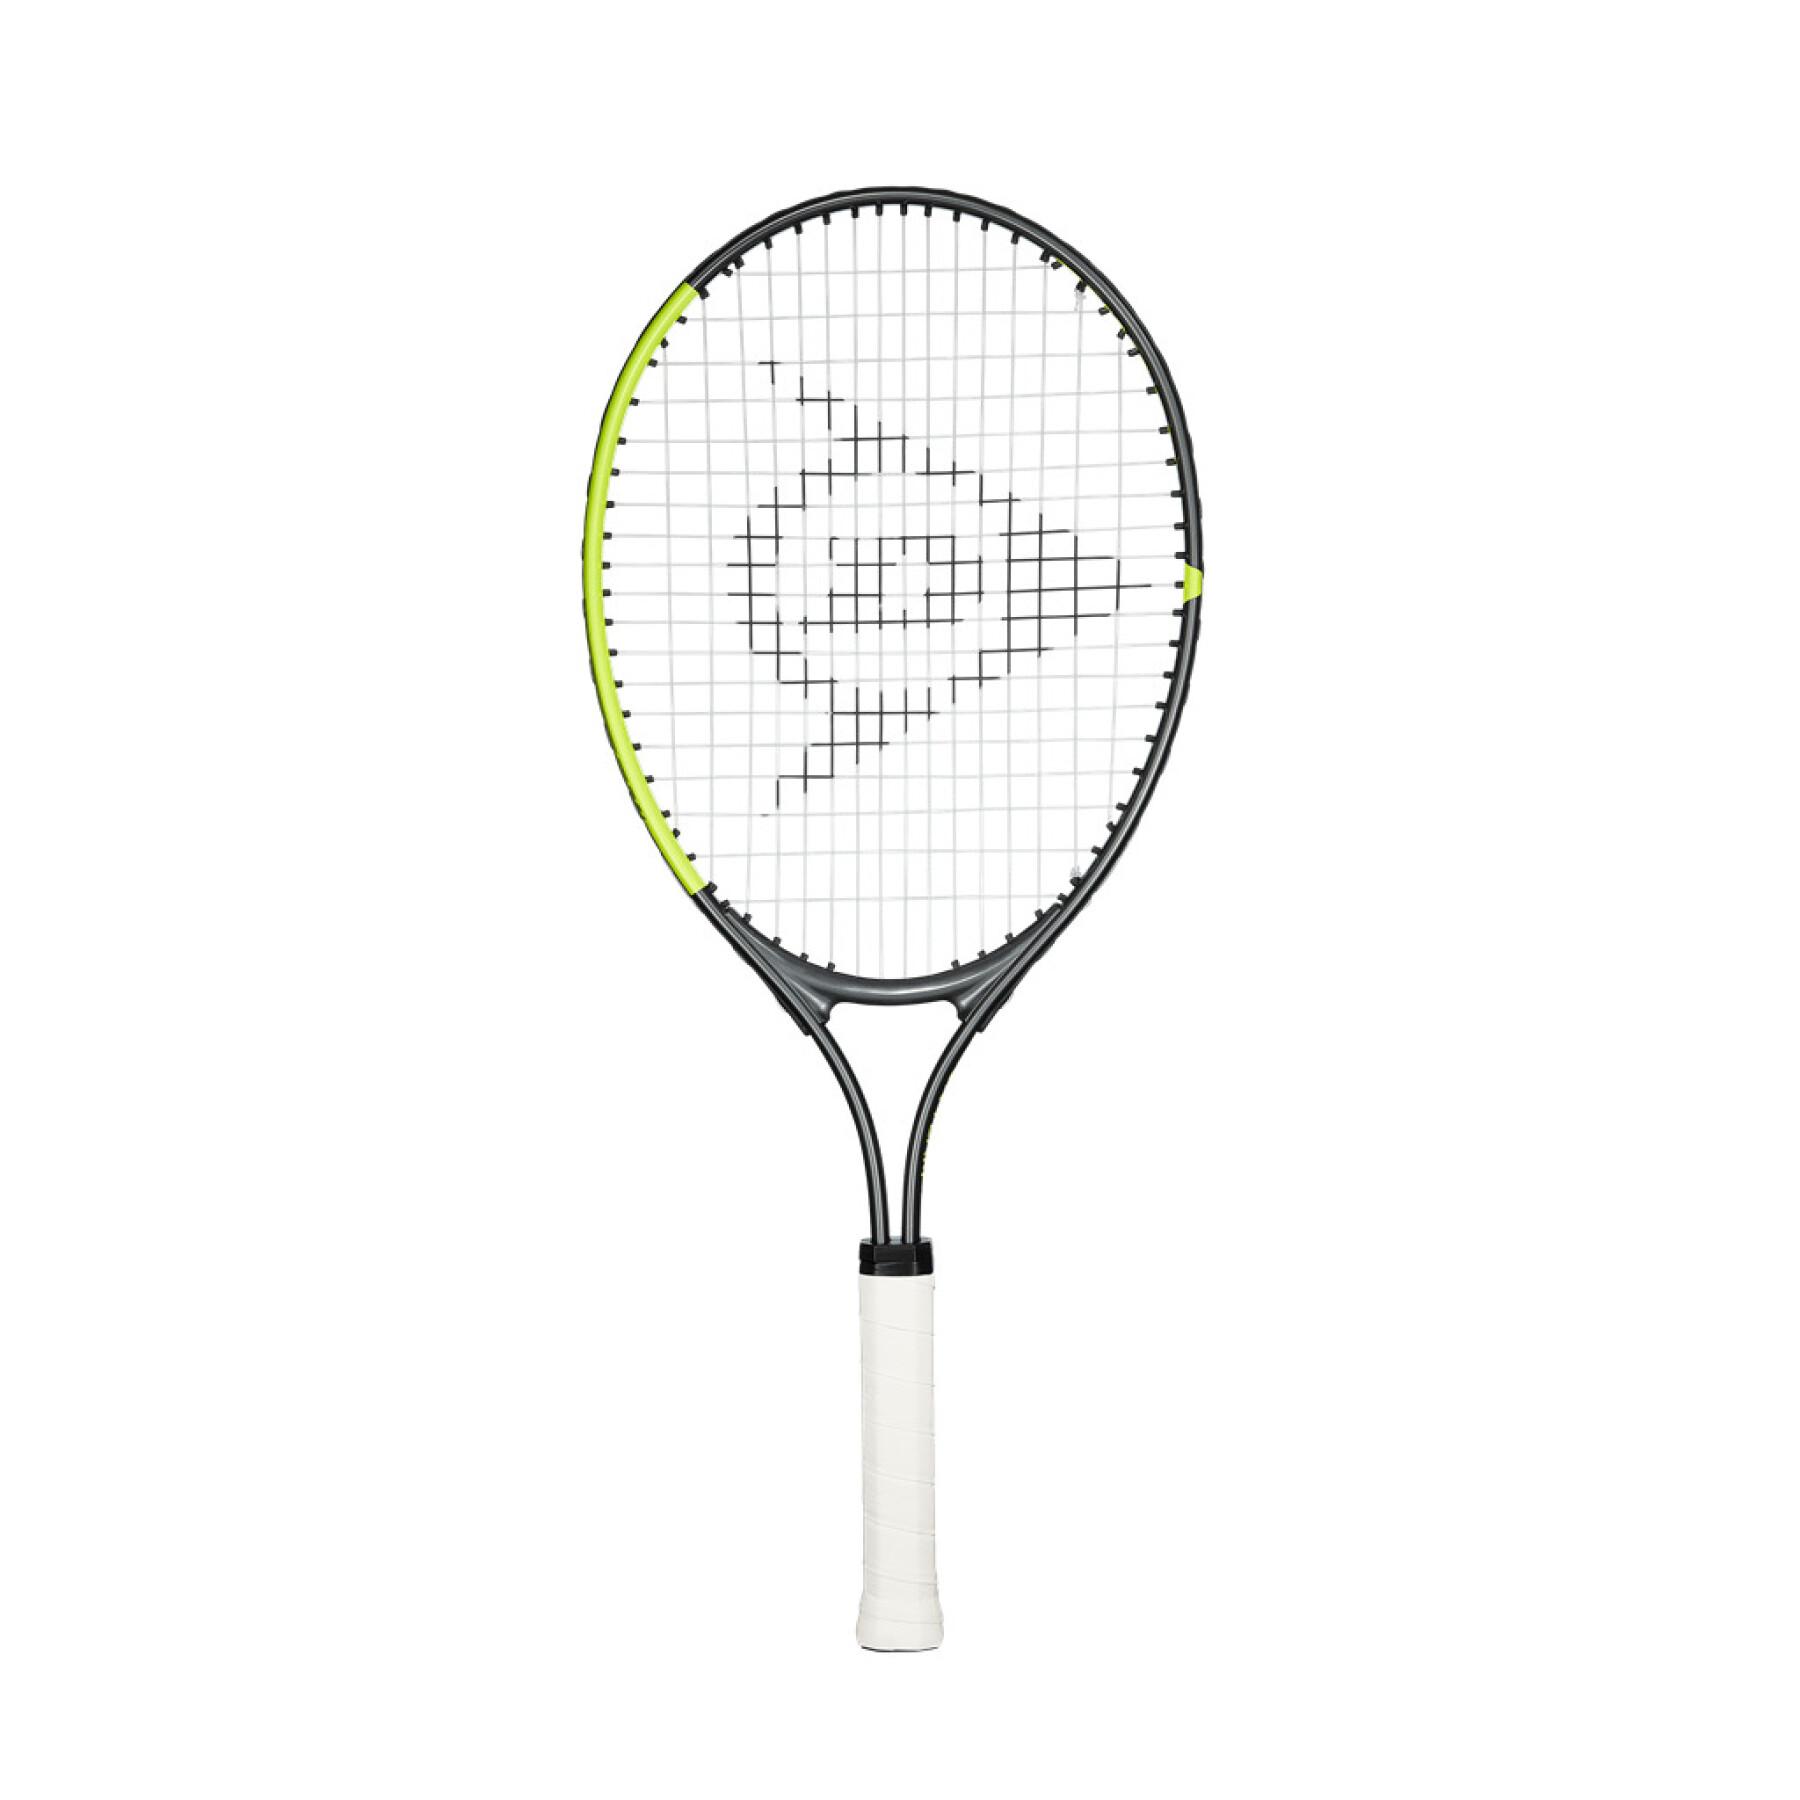 Children's racket Dunlop sx 25 g0